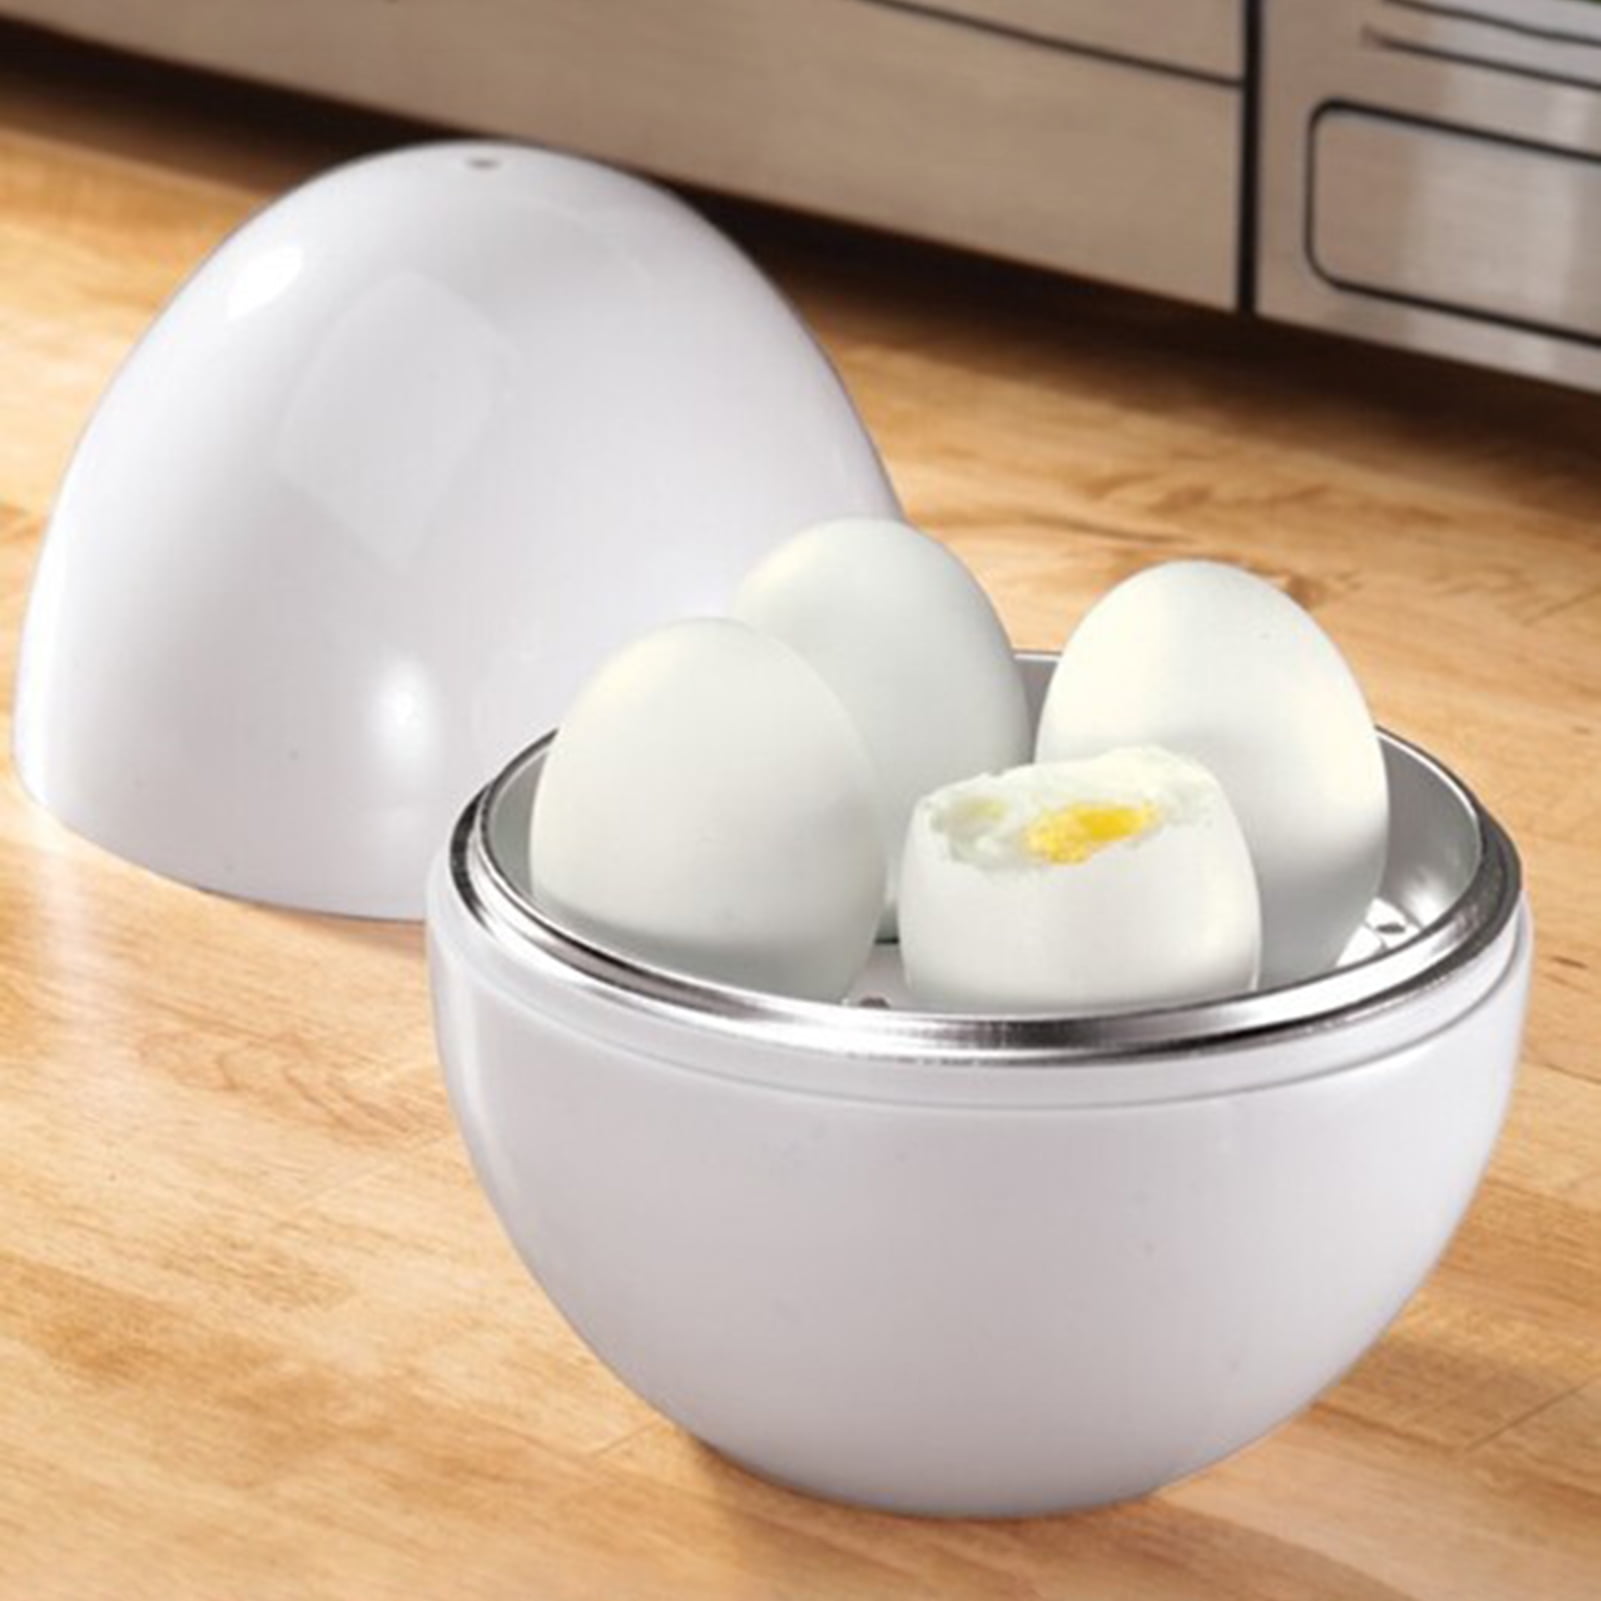 Dropship Microwave Egg Boiler Soft Medium Hard Egg Steamer Ball